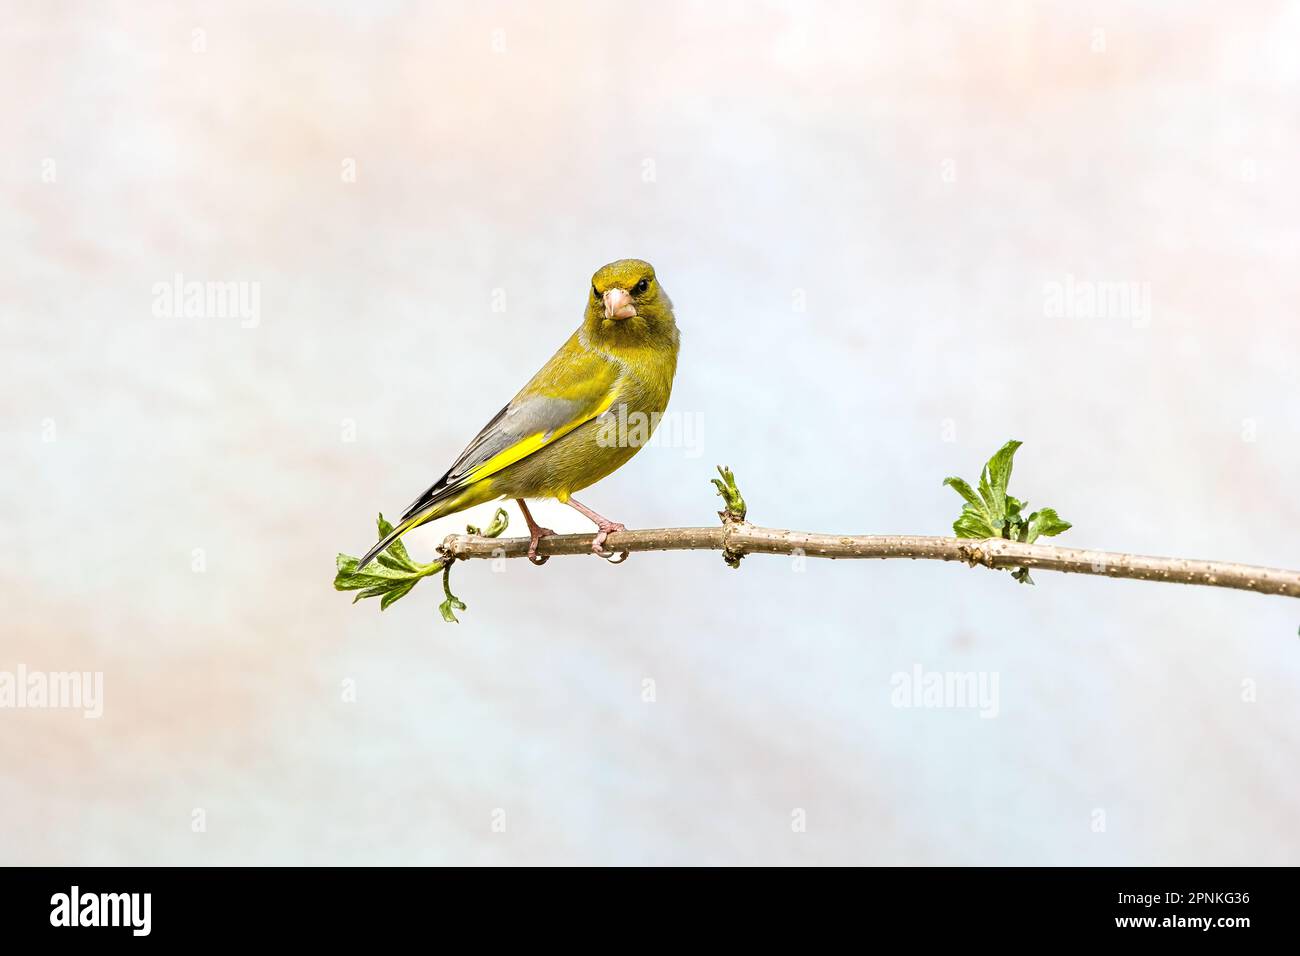 Primo piano di un greenfinch, Chloris chloris, in piedi disteso su un ramo in posizione allerta e ha contatto visivo con il fotografo contro la luce blu Foto Stock